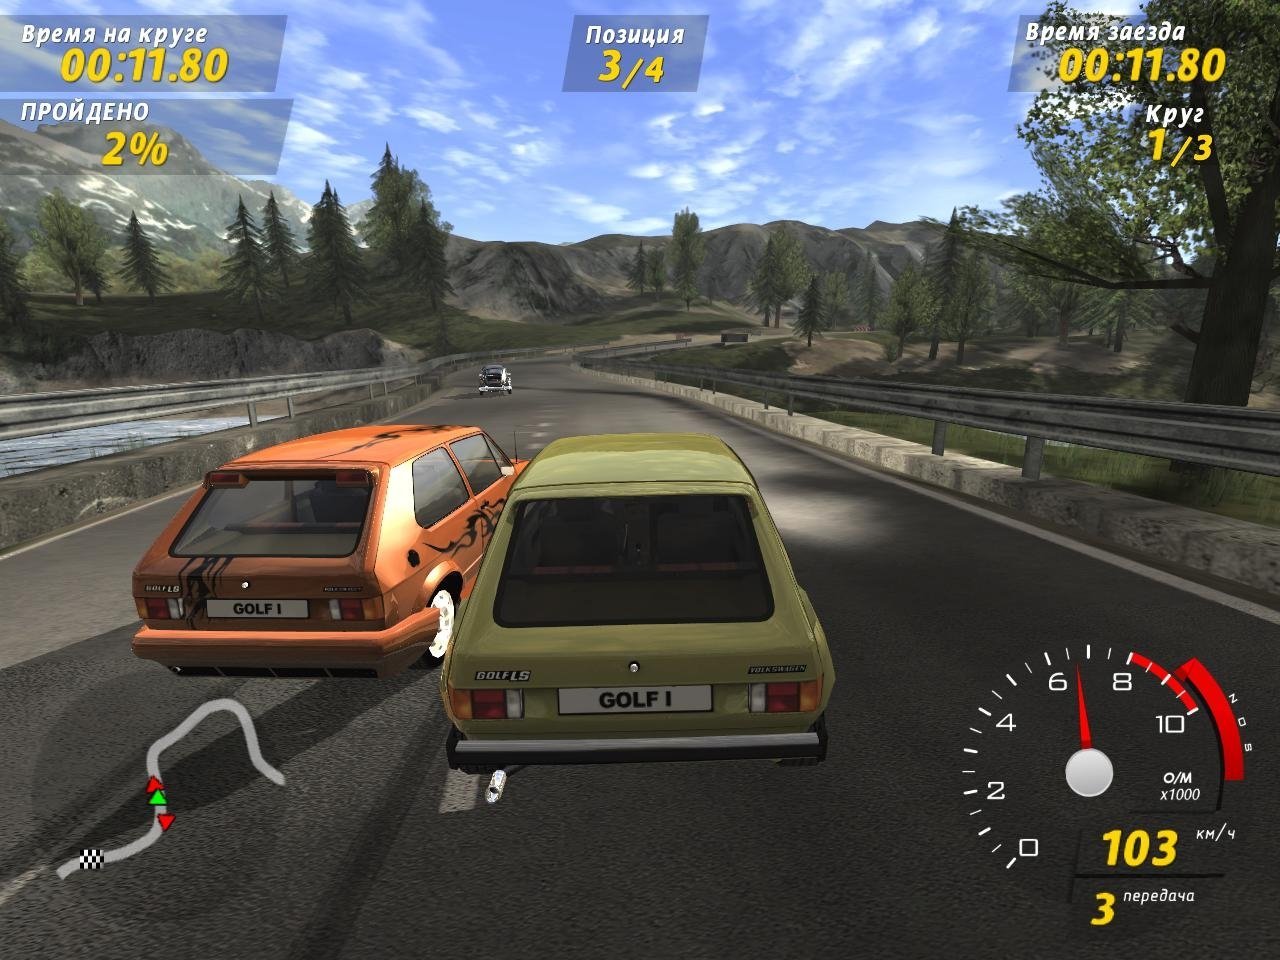 Компьютерная игра автомобиль. Игра Volkswagen GTI Racing. GTI Racing Volkswagen Golf Racer. GTI Racing игра 2006. Русские гонки.